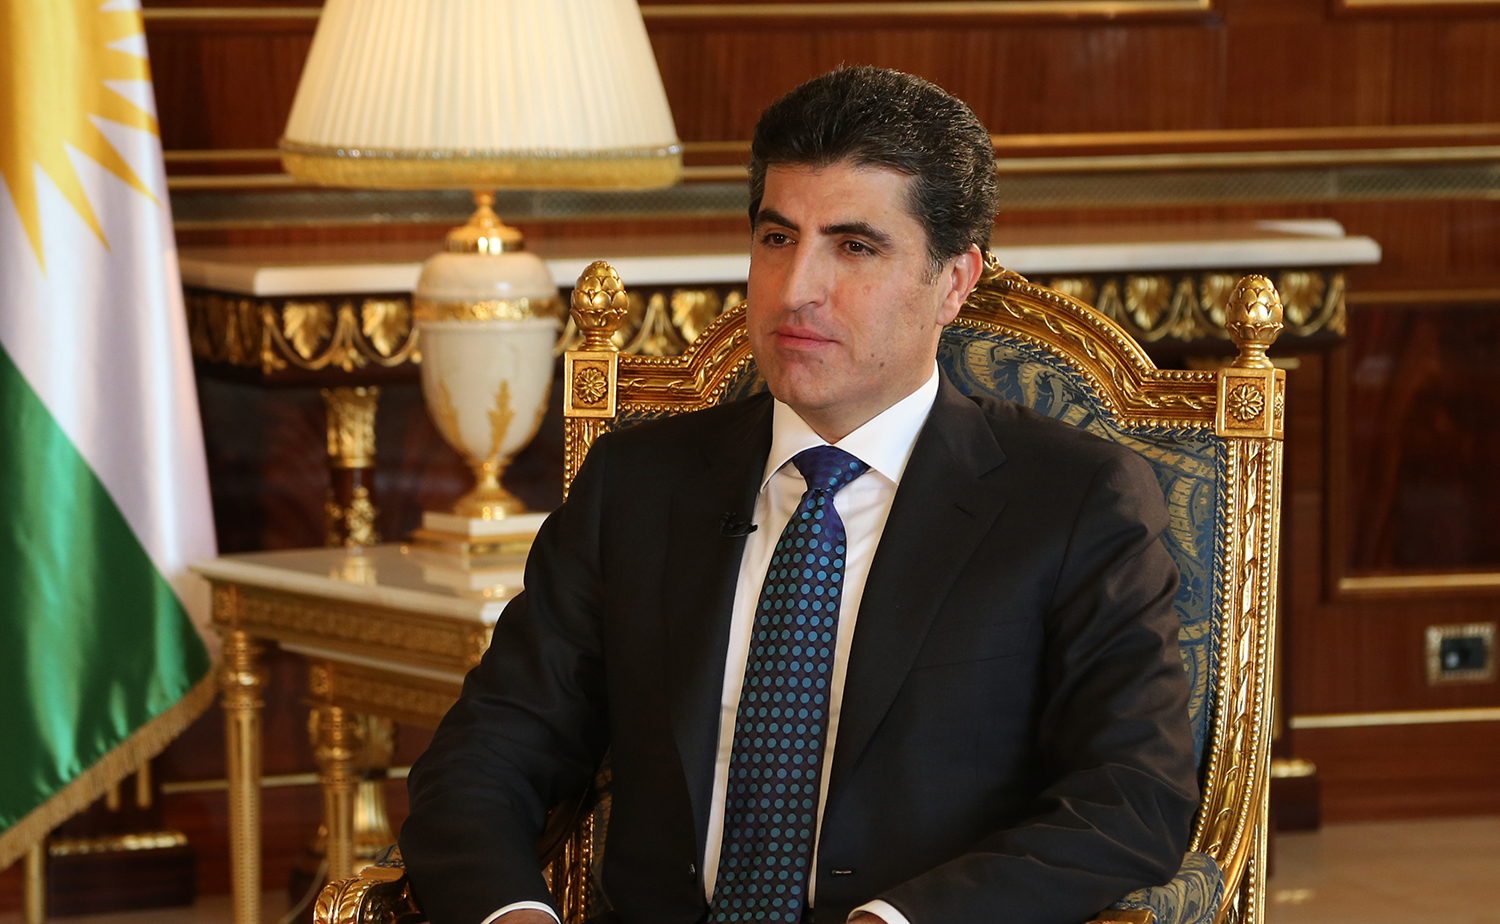 كوردي عراقي يتسنم منصبا في الحكومة الجديدة لبريطانيا وبارزاني يعلق